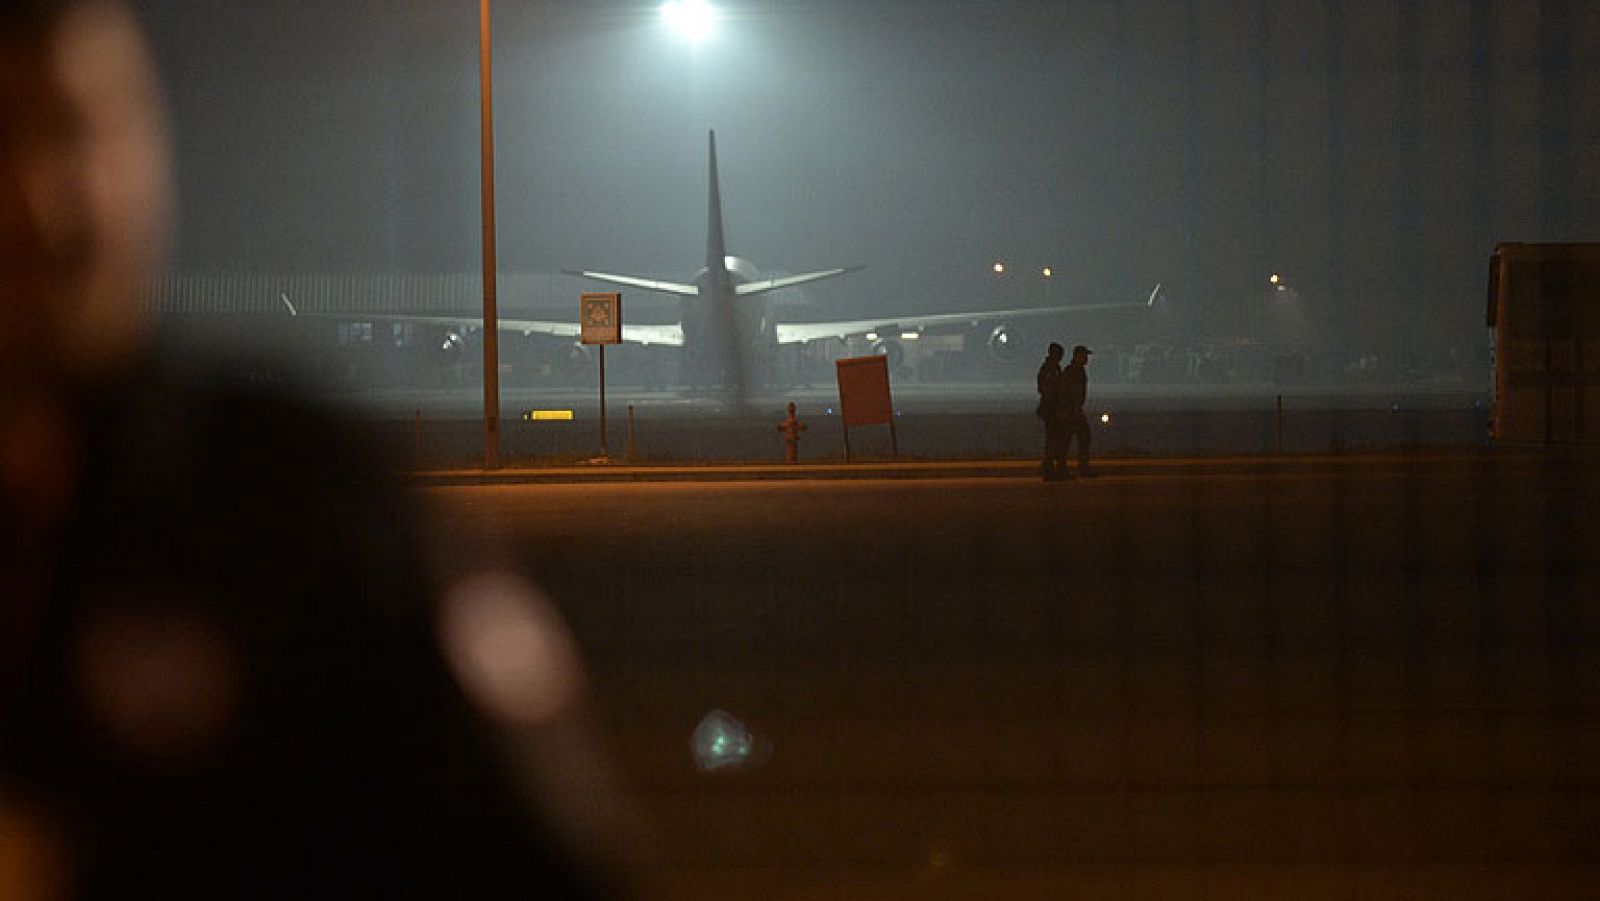   Un intento de secuestro de un avión turco procedente de Ucrania ha terminado en el aeropuerto de Estambul con la entrega del frustrado pirata aéreo, según fuentes oficiales citadas por medios locales e internacionales. 